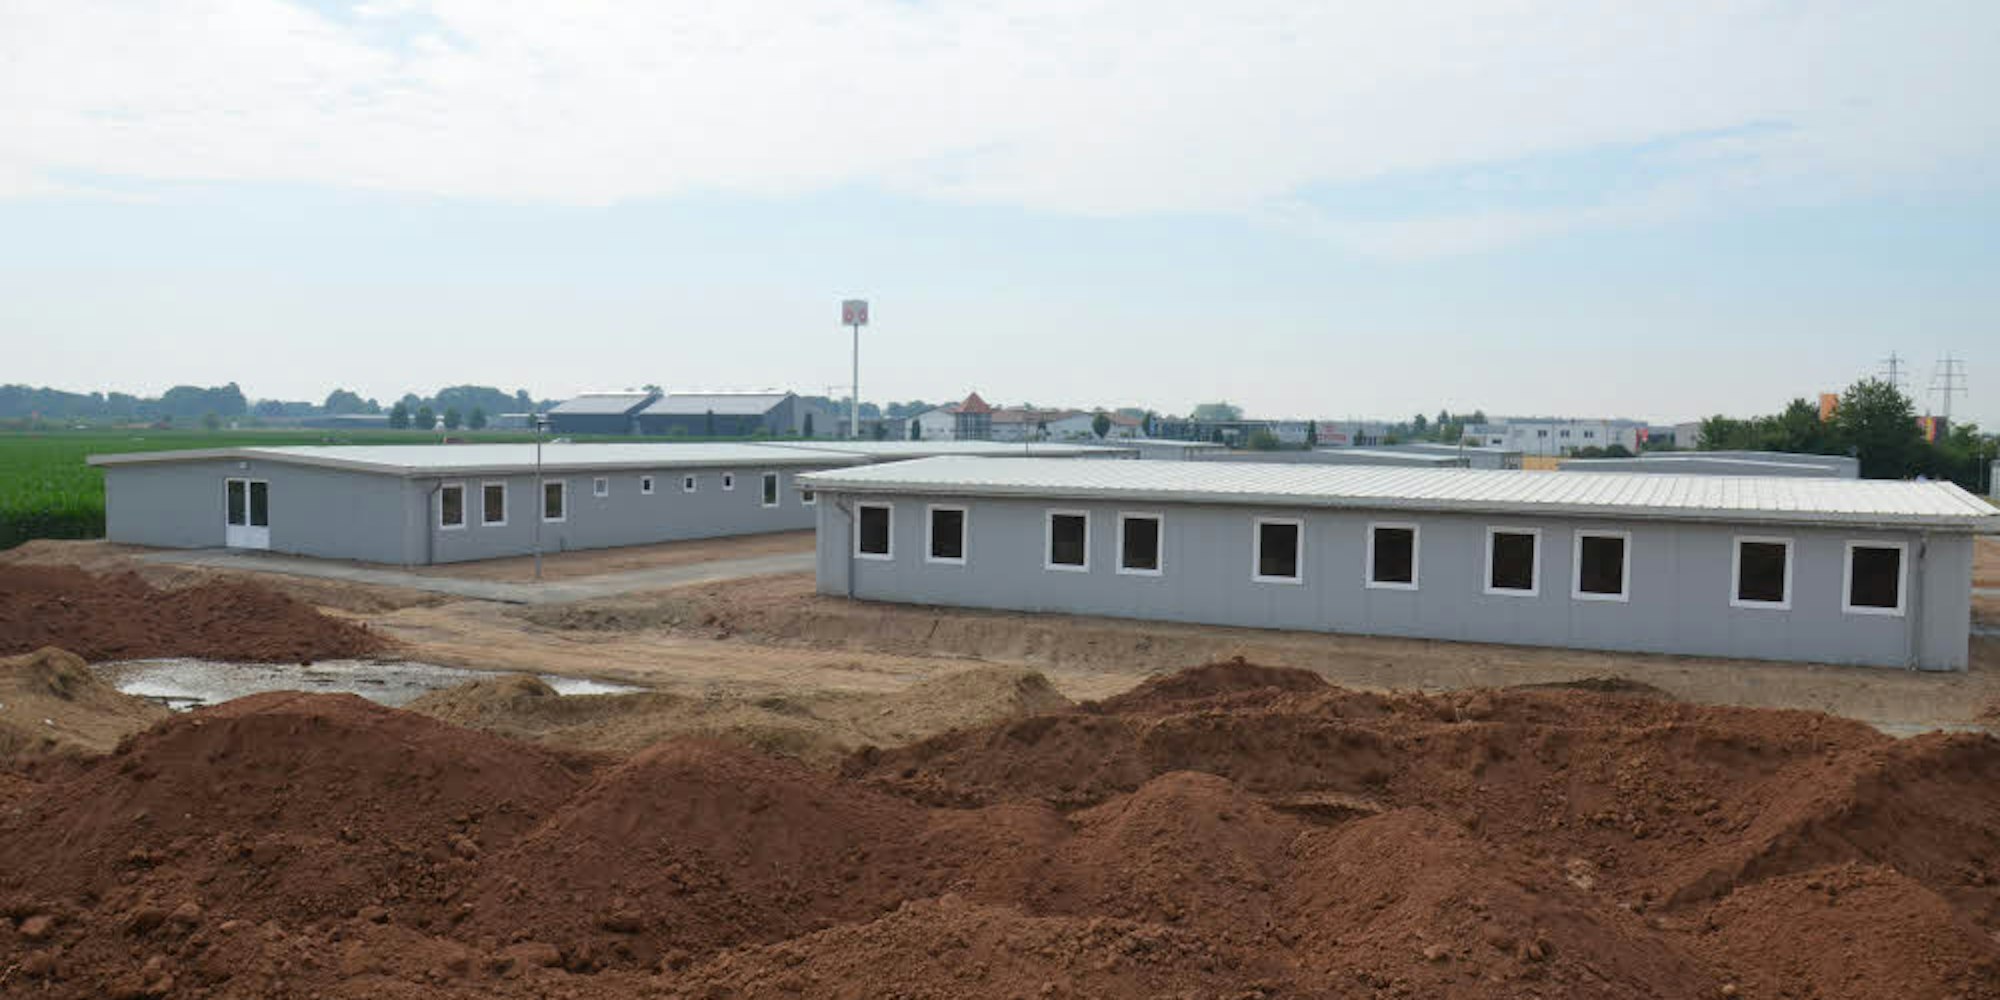 Bezugsfertig sind die neuen Gebäude der Flüchtlingsunterkunft am Brabanter Weg in Lechenich.